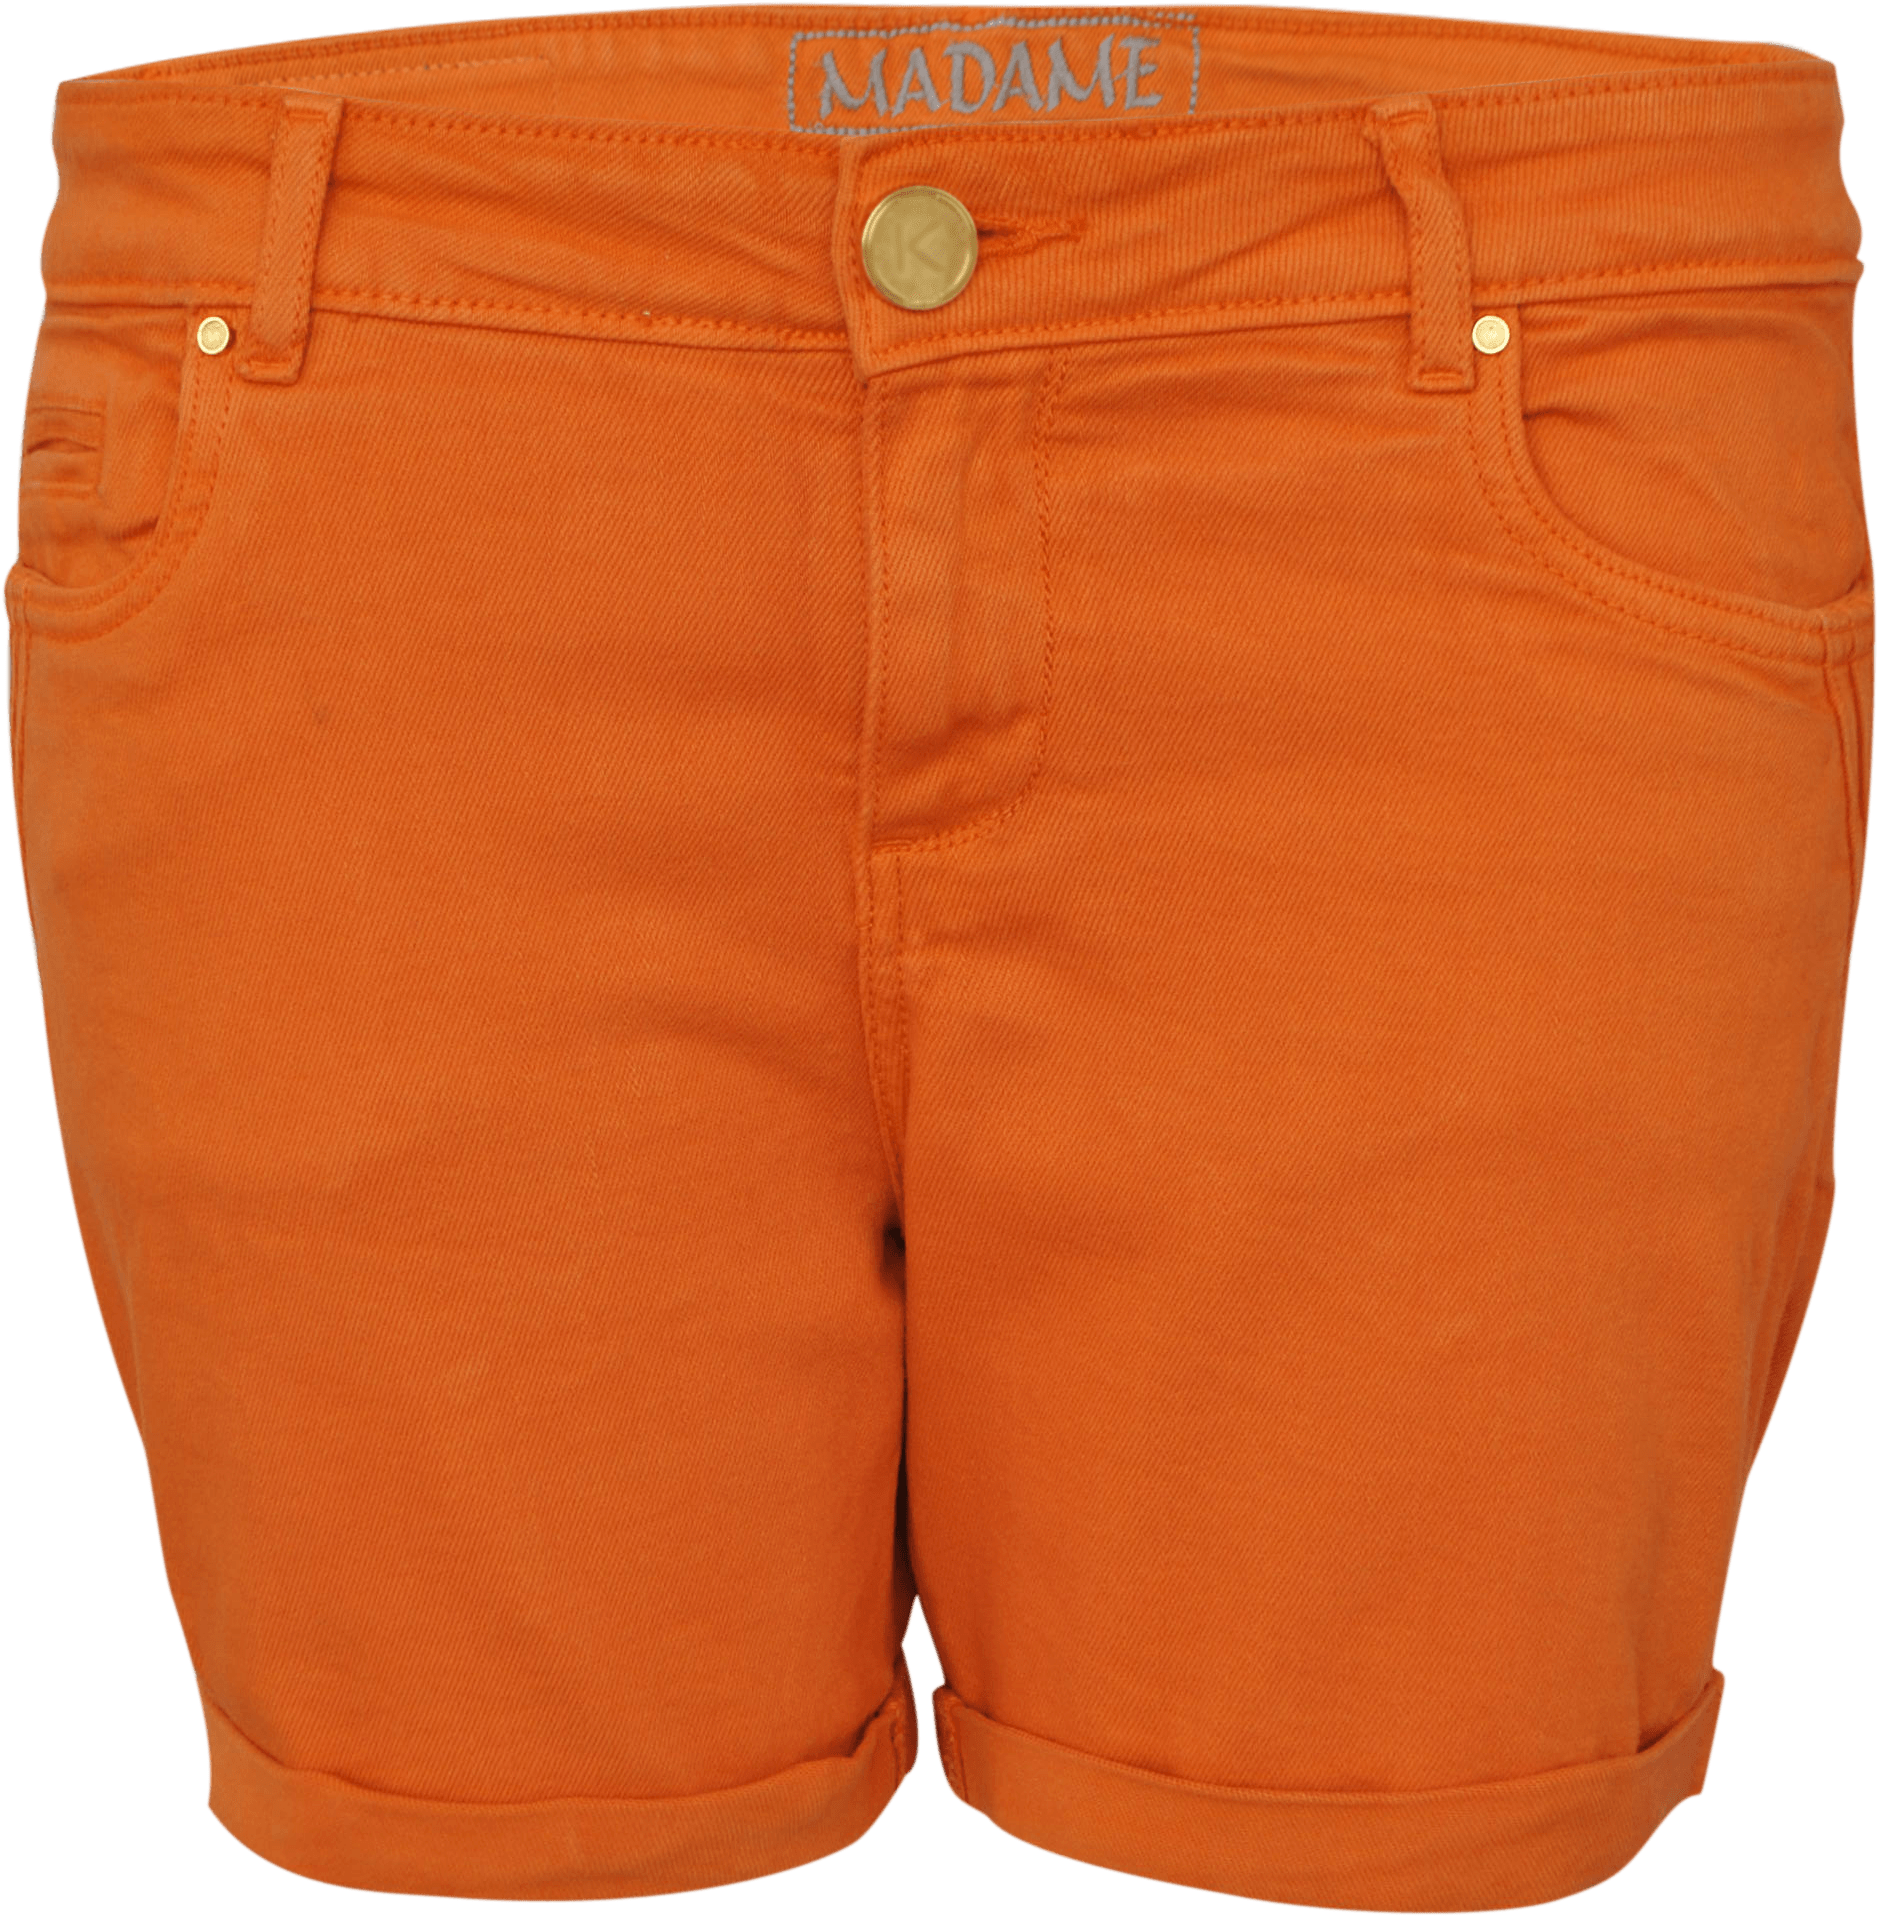 Clothes - Bermuda Shorts (2592x2392), Png Download